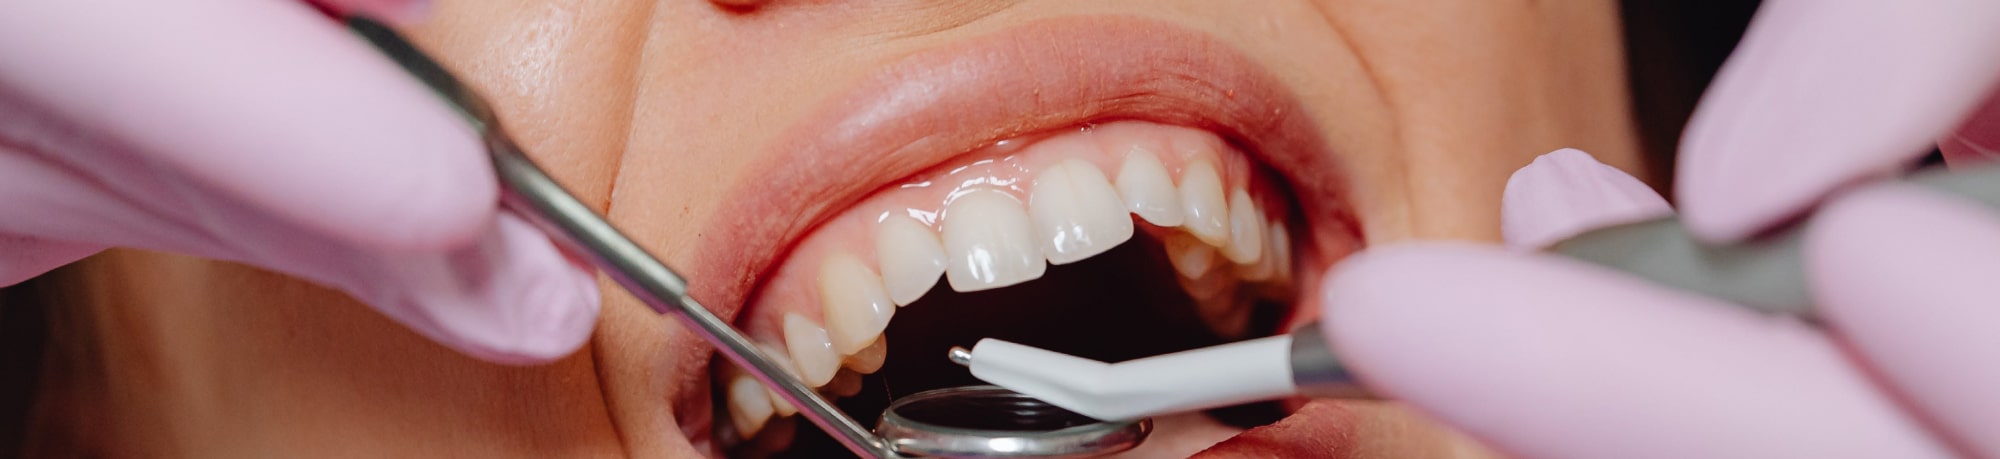 Лечение зубов: лучше вовремя, чем дорого